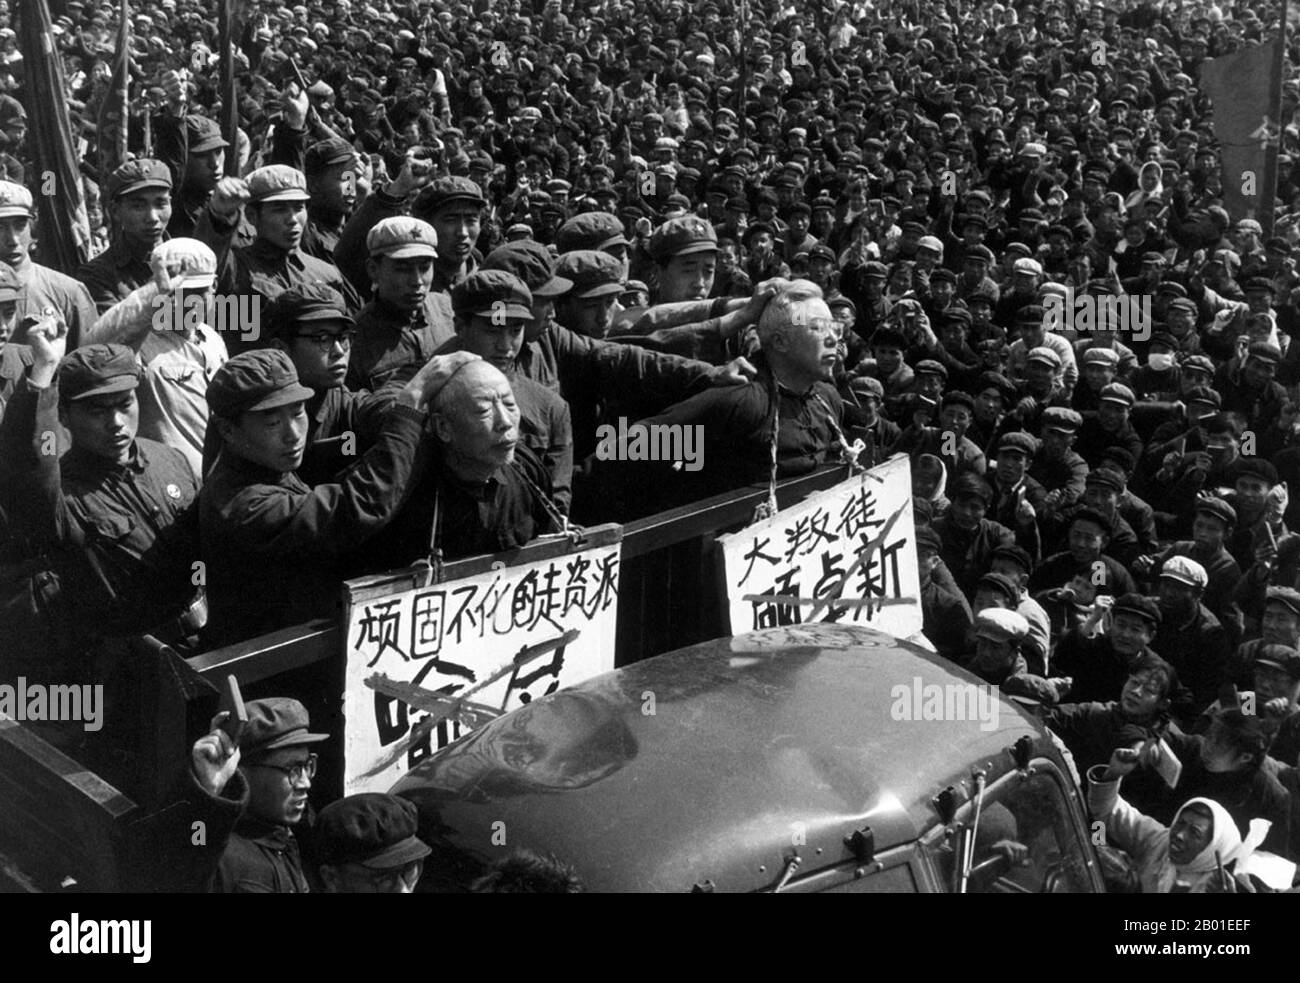 China: Denuncing 'Capital Roaders', Szene aus der Kulturrevolution (1966-1976), August 1968. Die große proletarische Kulturrevolution, allgemein bekannt als Kulturrevolution (Chinesisch: 文化大革命), war eine soziopolitische Bewegung, die in der Volksrepublik China von 1966 bis 1976 stattfand. Das von Mao Zedong, dem damaligen Vorsitzenden der Kommunistischen Partei Chinas, in Bewegung gesetzte Ziel bestand darin, den Sozialismus im Land zu erzwingen, indem kapitalistische, traditionelle und kulturelle Elemente aus der chinesischen Gesellschaft entfernt und die maoistische Orthodoxie innerhalb der Partei durchgesetzt werden. Stockfoto